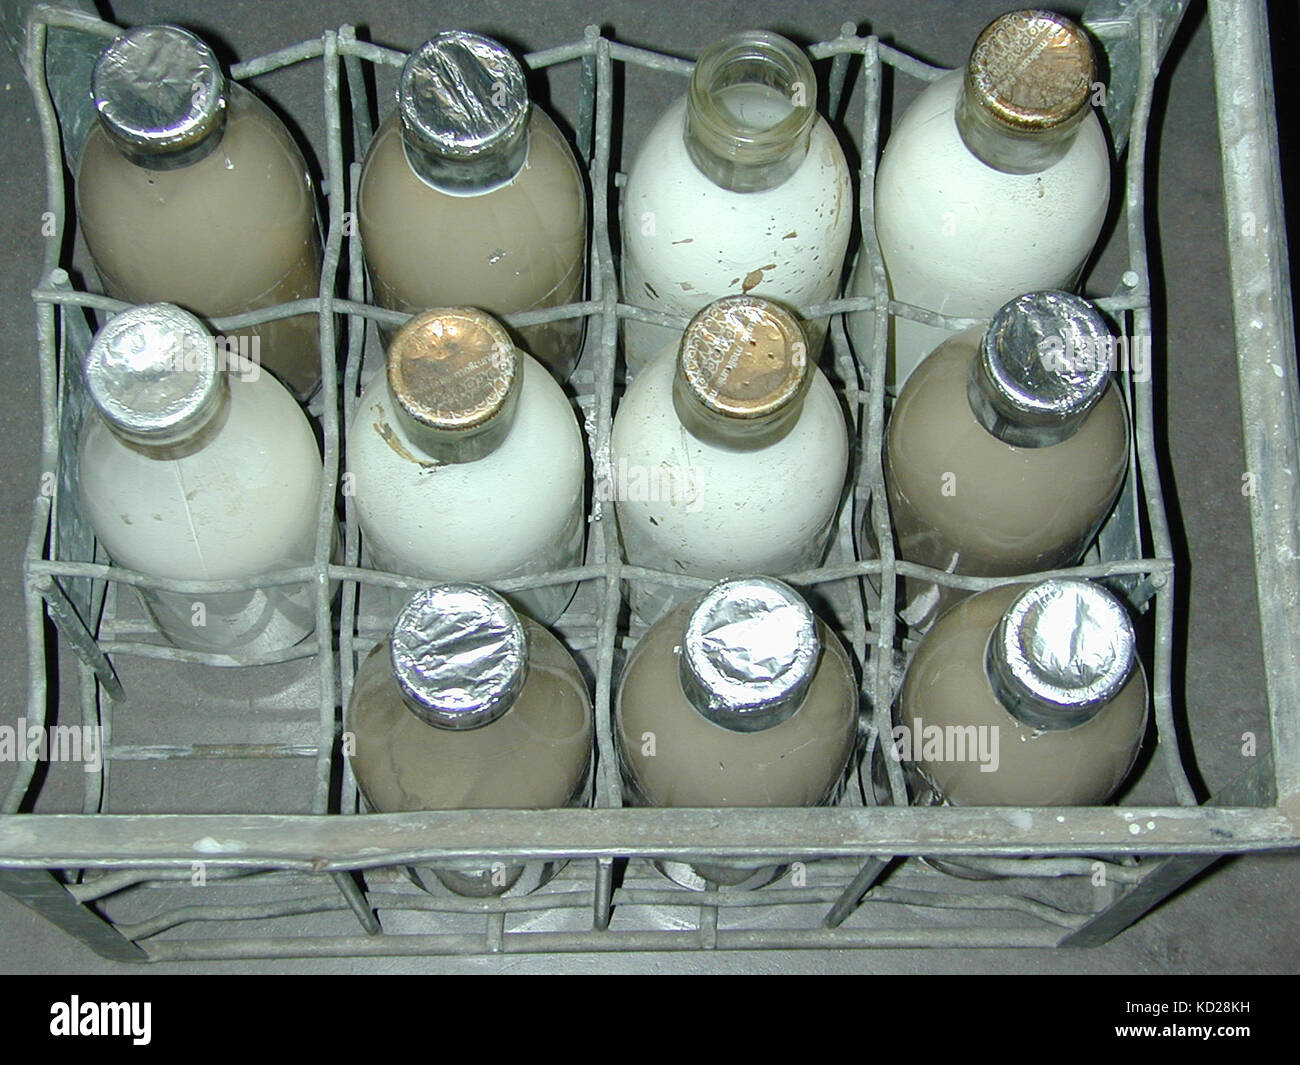 https://c8.alamy.com/comp/KD28KH/vintage-milk-bottles-in-a-vintage-container-KD28KH.jpg